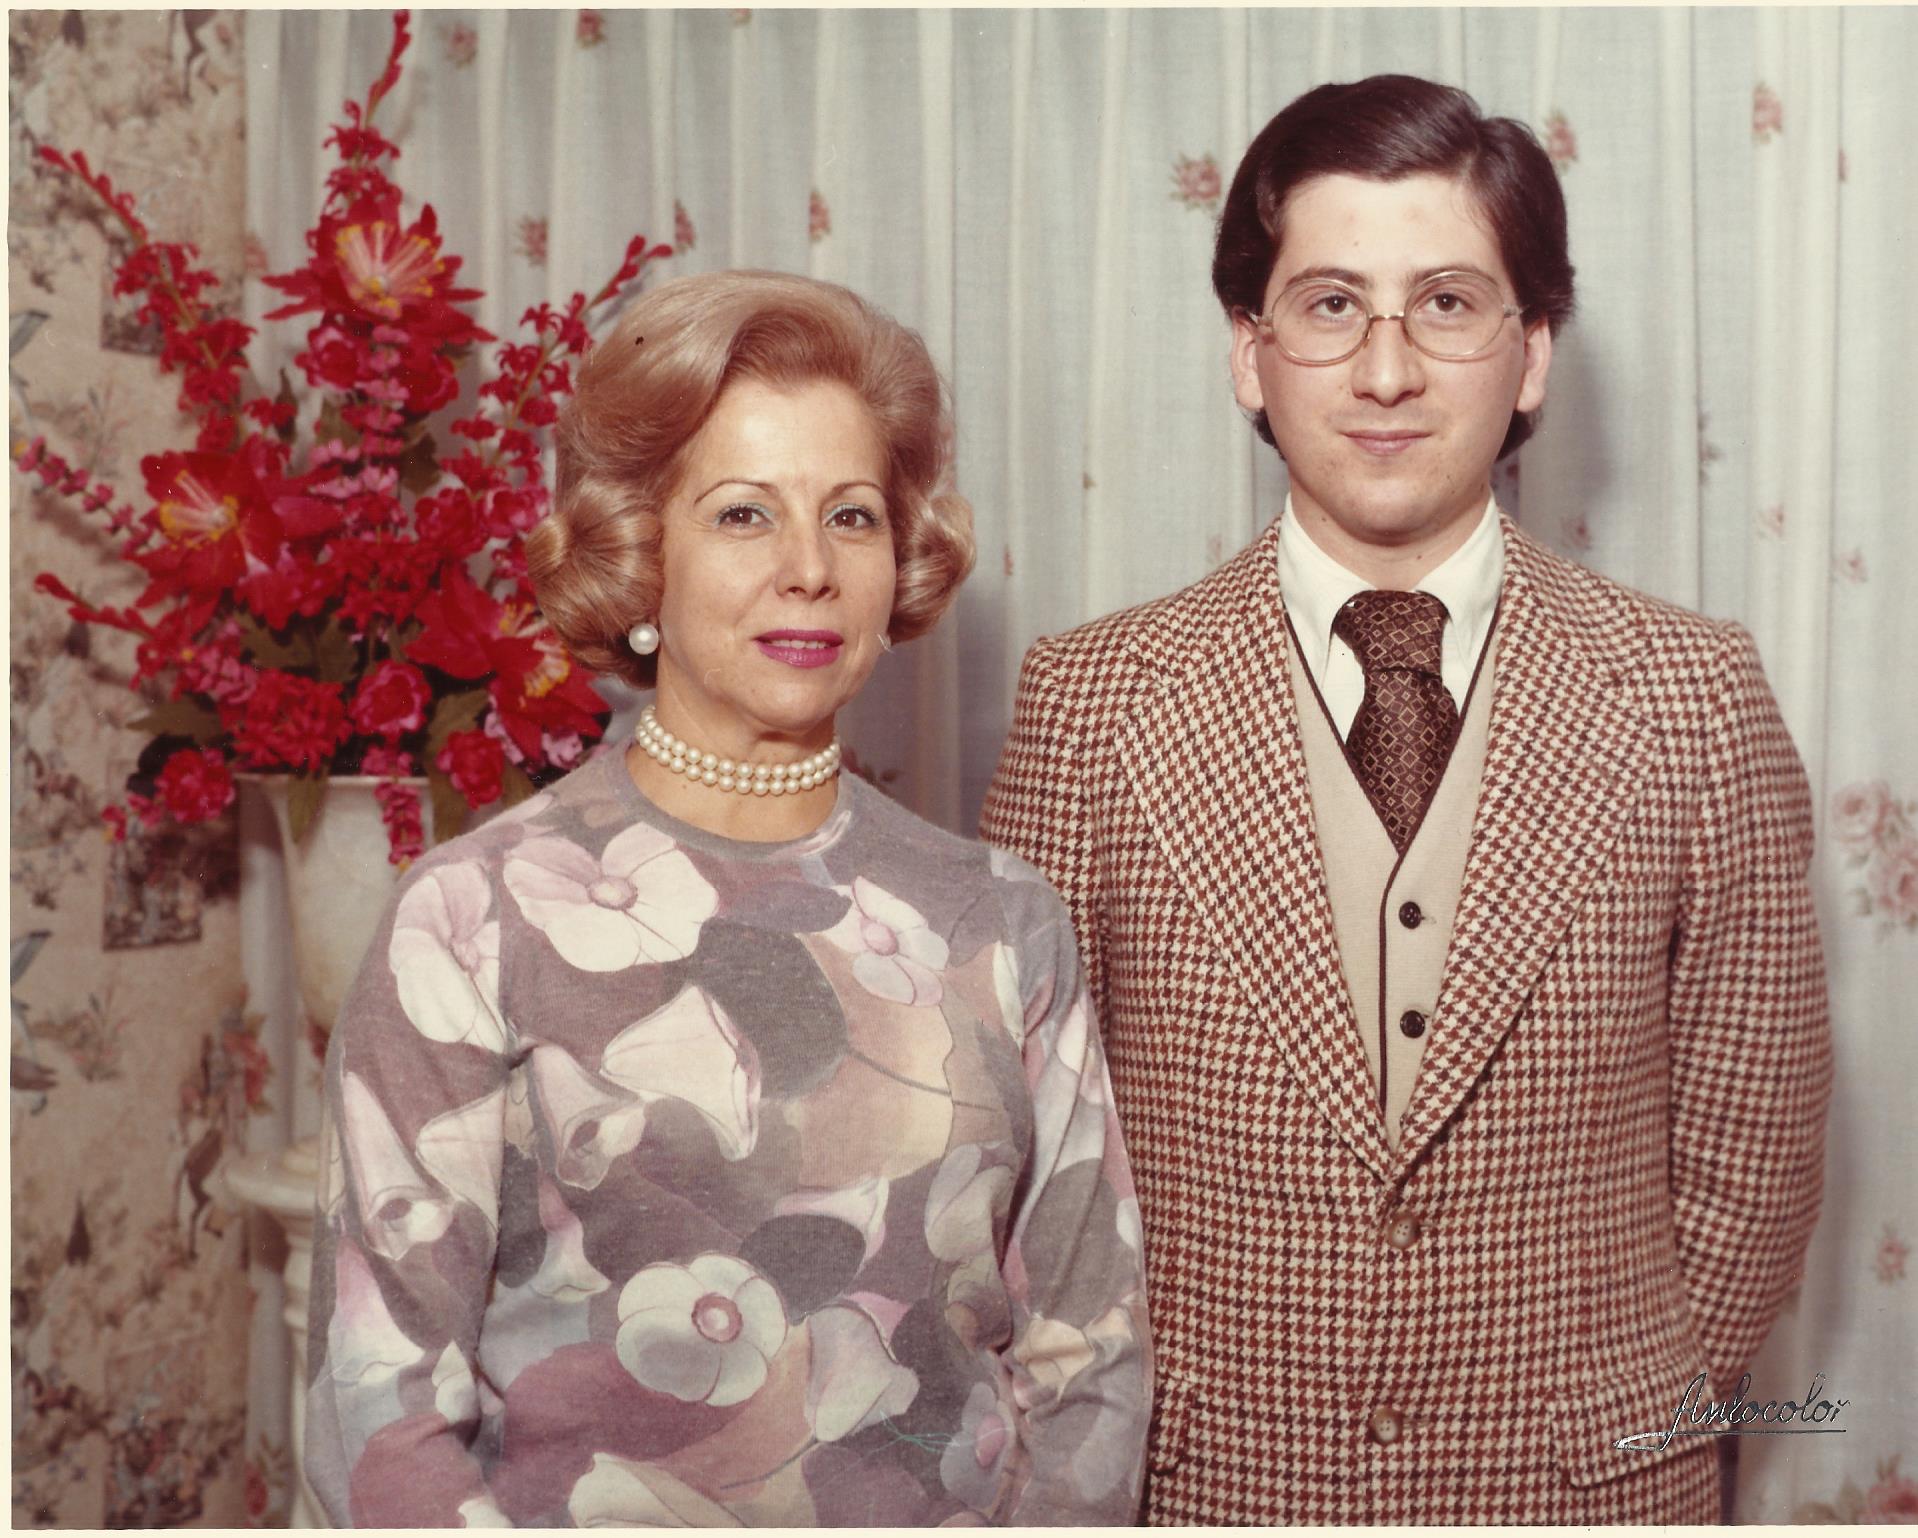 LAdeV y su mamá. Diciembre, 1973.